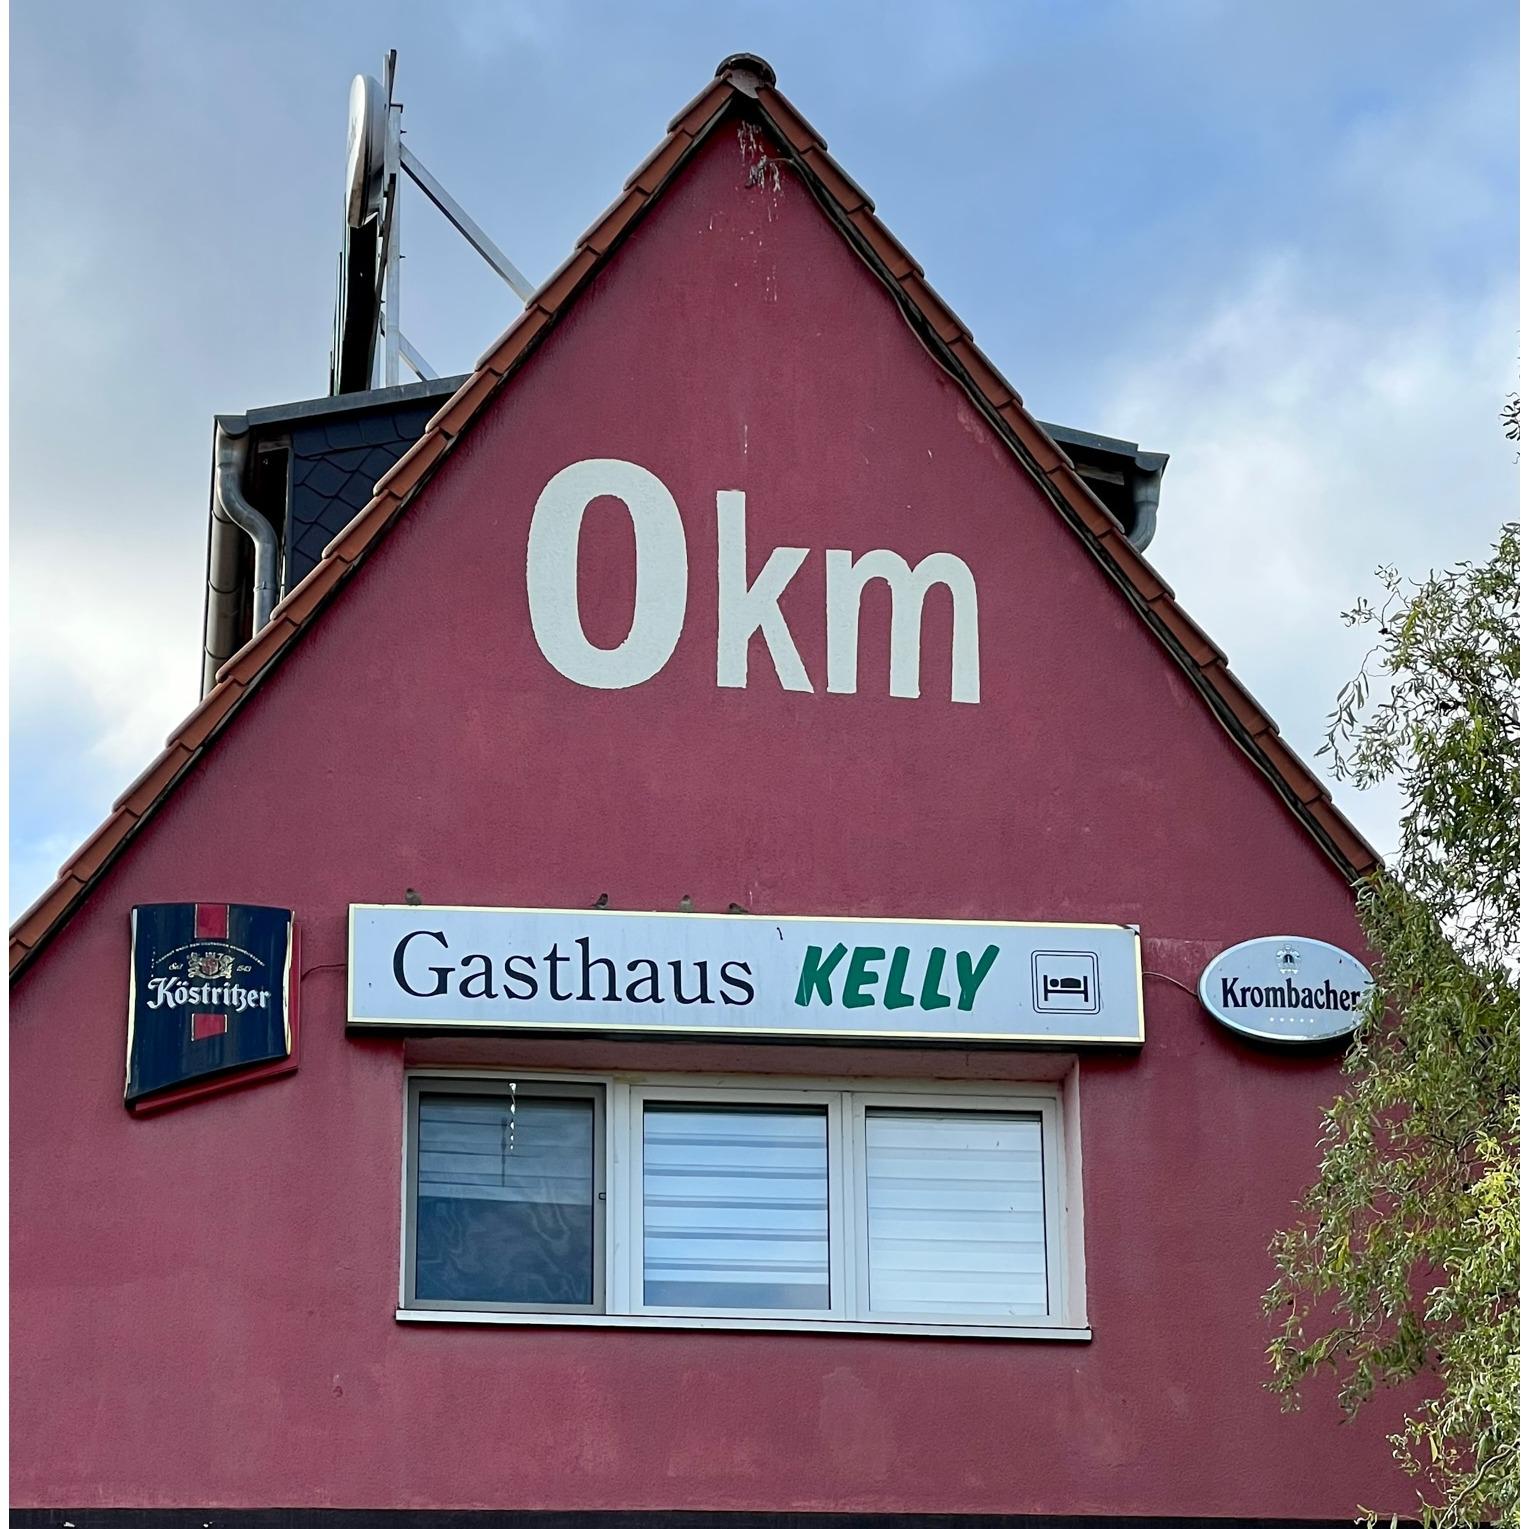 Gasthaus Kelly, Breite Strasse 11 in Magdeburg